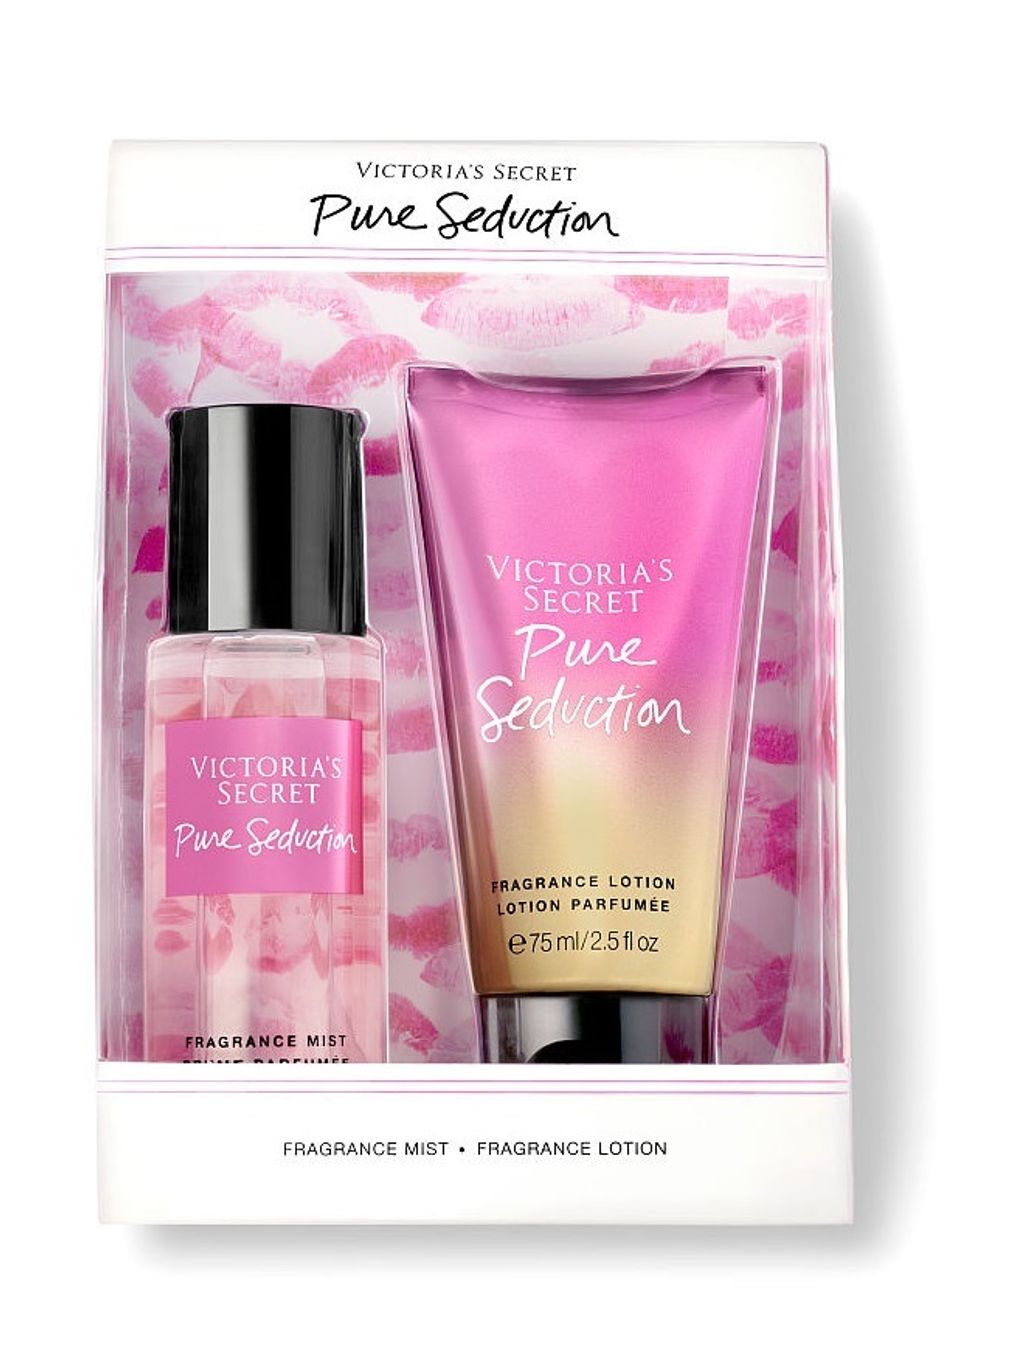 Victoria's Secret_Pure Seduction Gift Box 2in1 Lotion & Mist 75ml